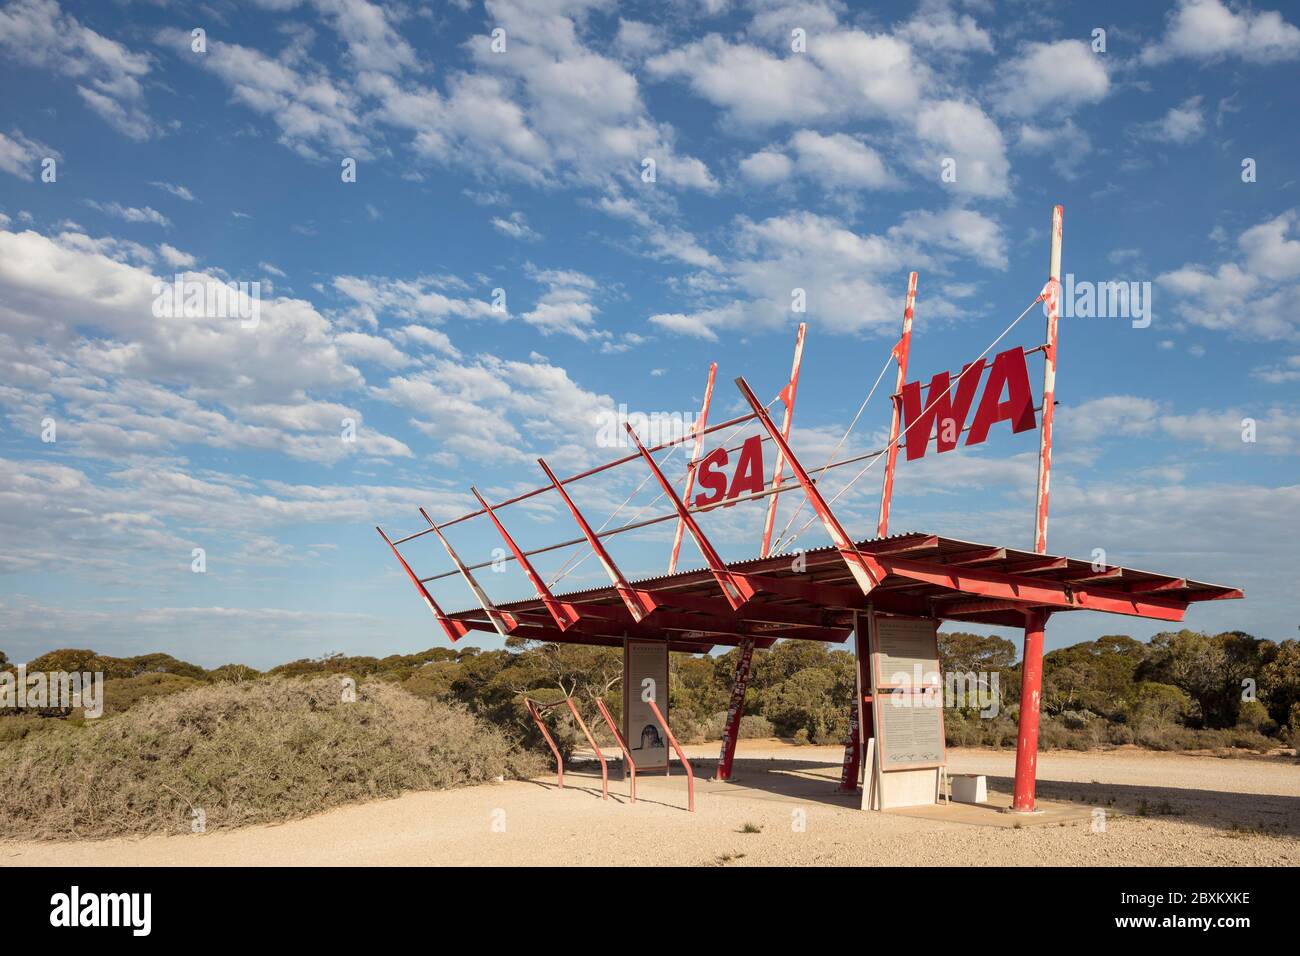 Sa WA Border South Australia 14 septembre 2019 : structure du pavillon rouge célébrant la frontière entre l'Australie méridionale et l'Australie occidentale Banque D'Images